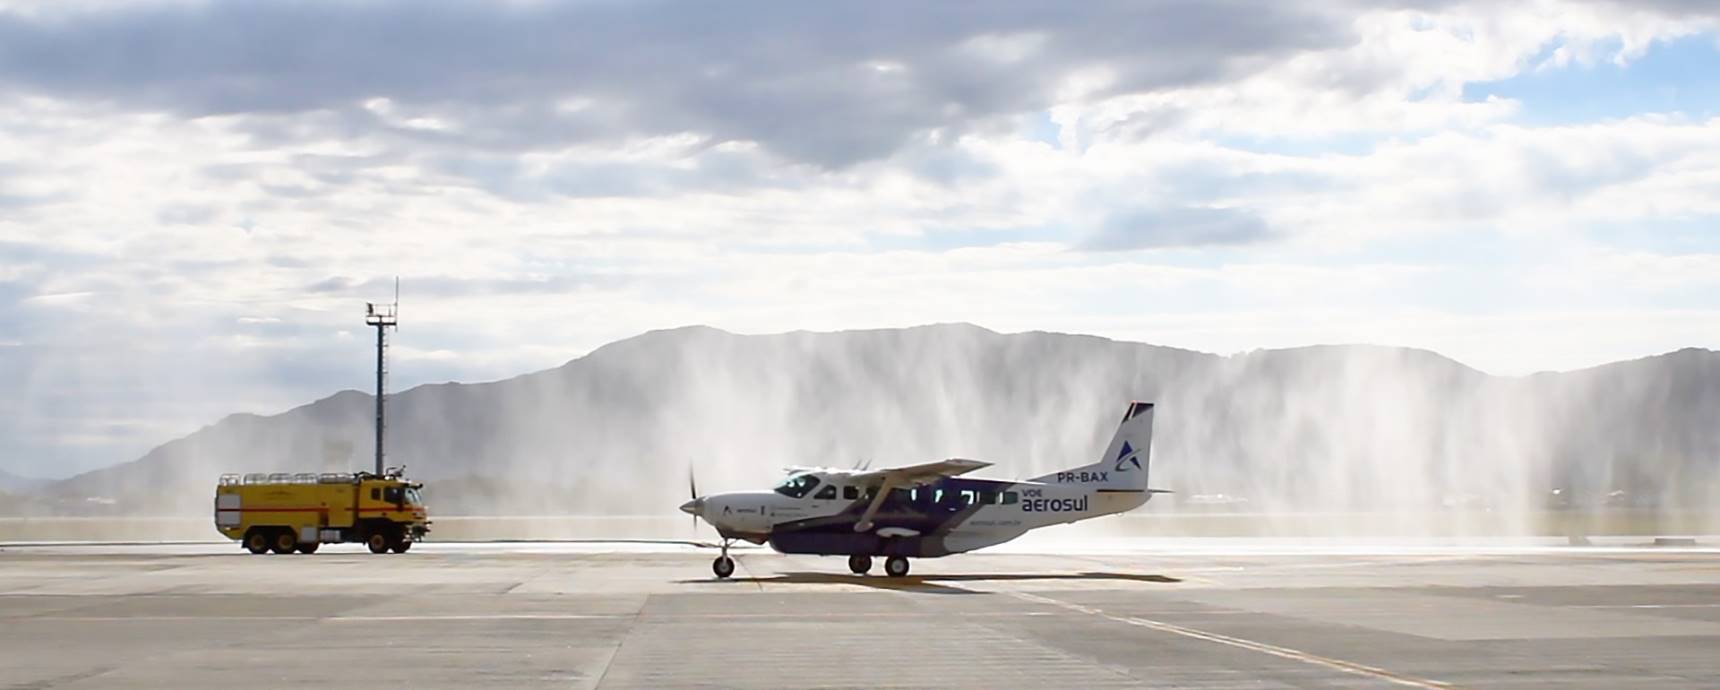 Mit Wassergruß und einem besonderen Empfang für Passagiere eröffnet der Flughafen Florianópolis mit Aerosul die Route nach Curitiba